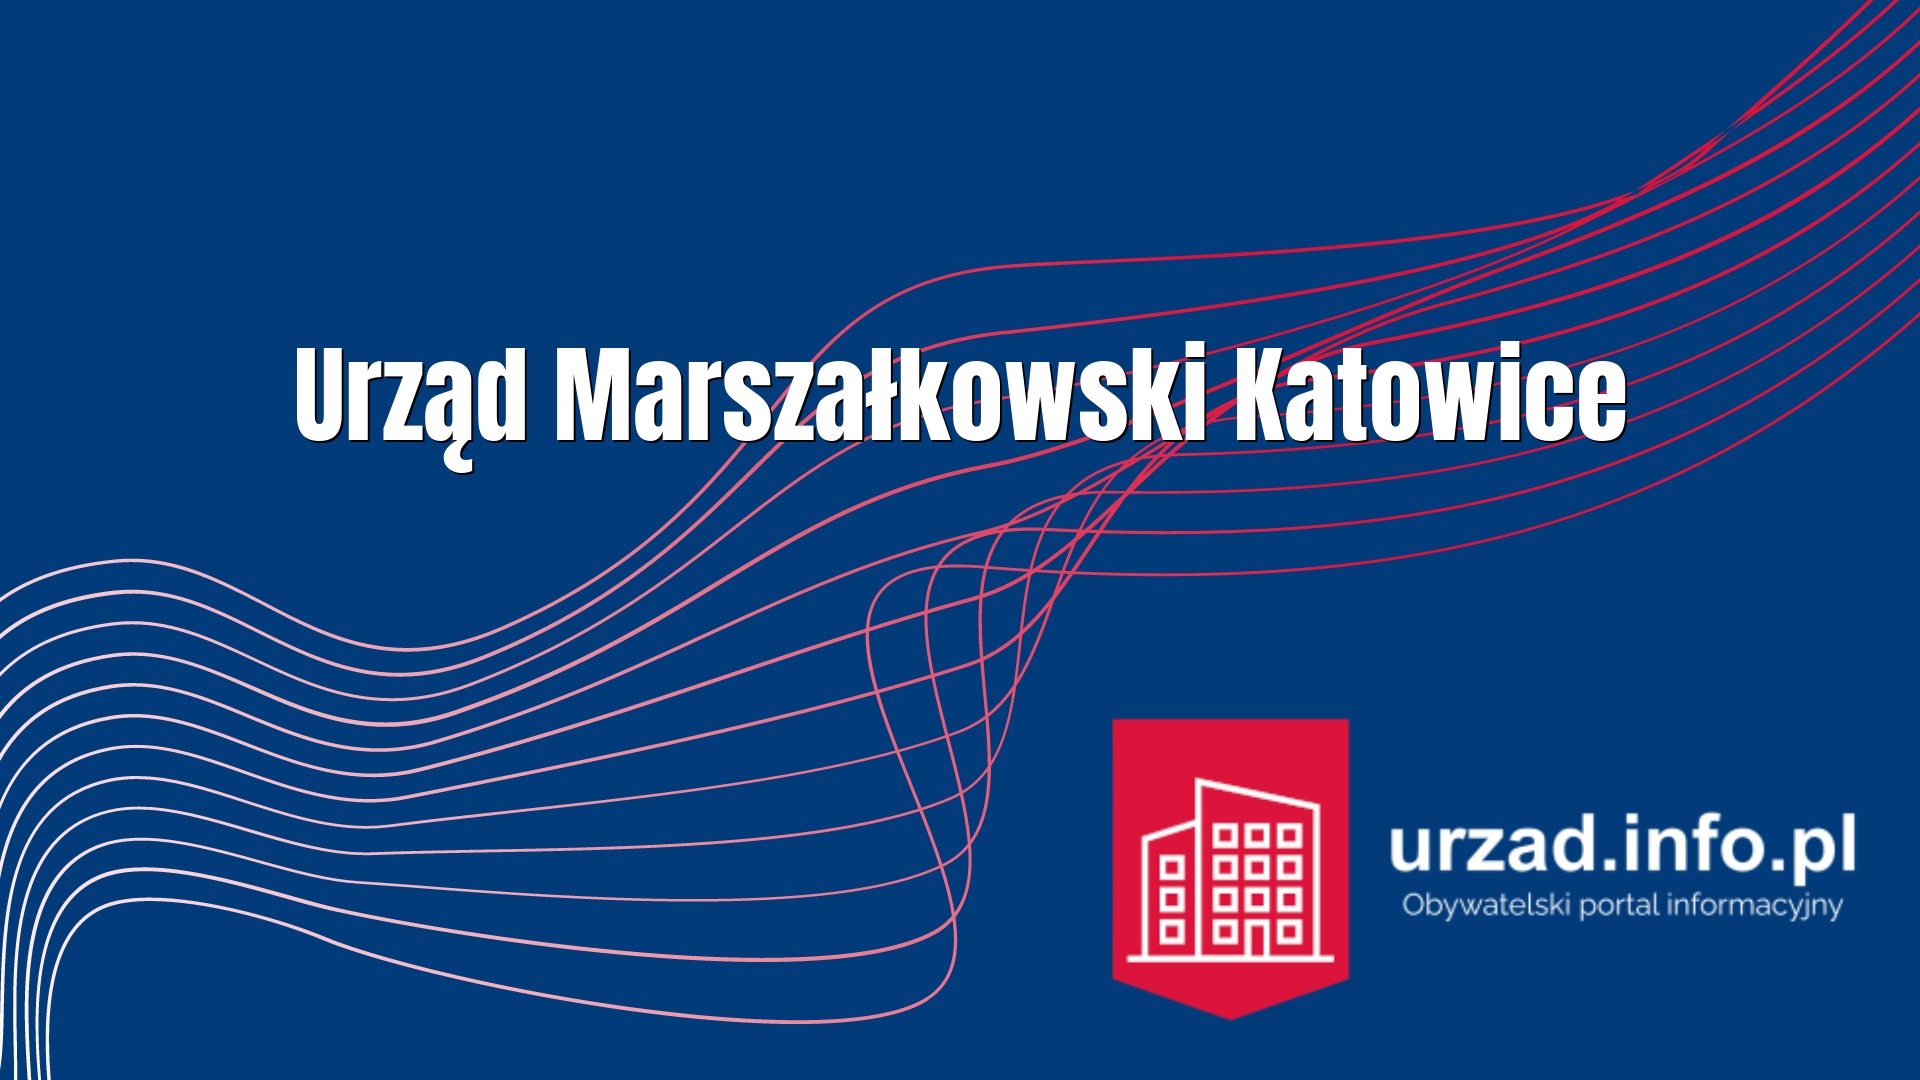 Urząd Marszałkowski Katowice